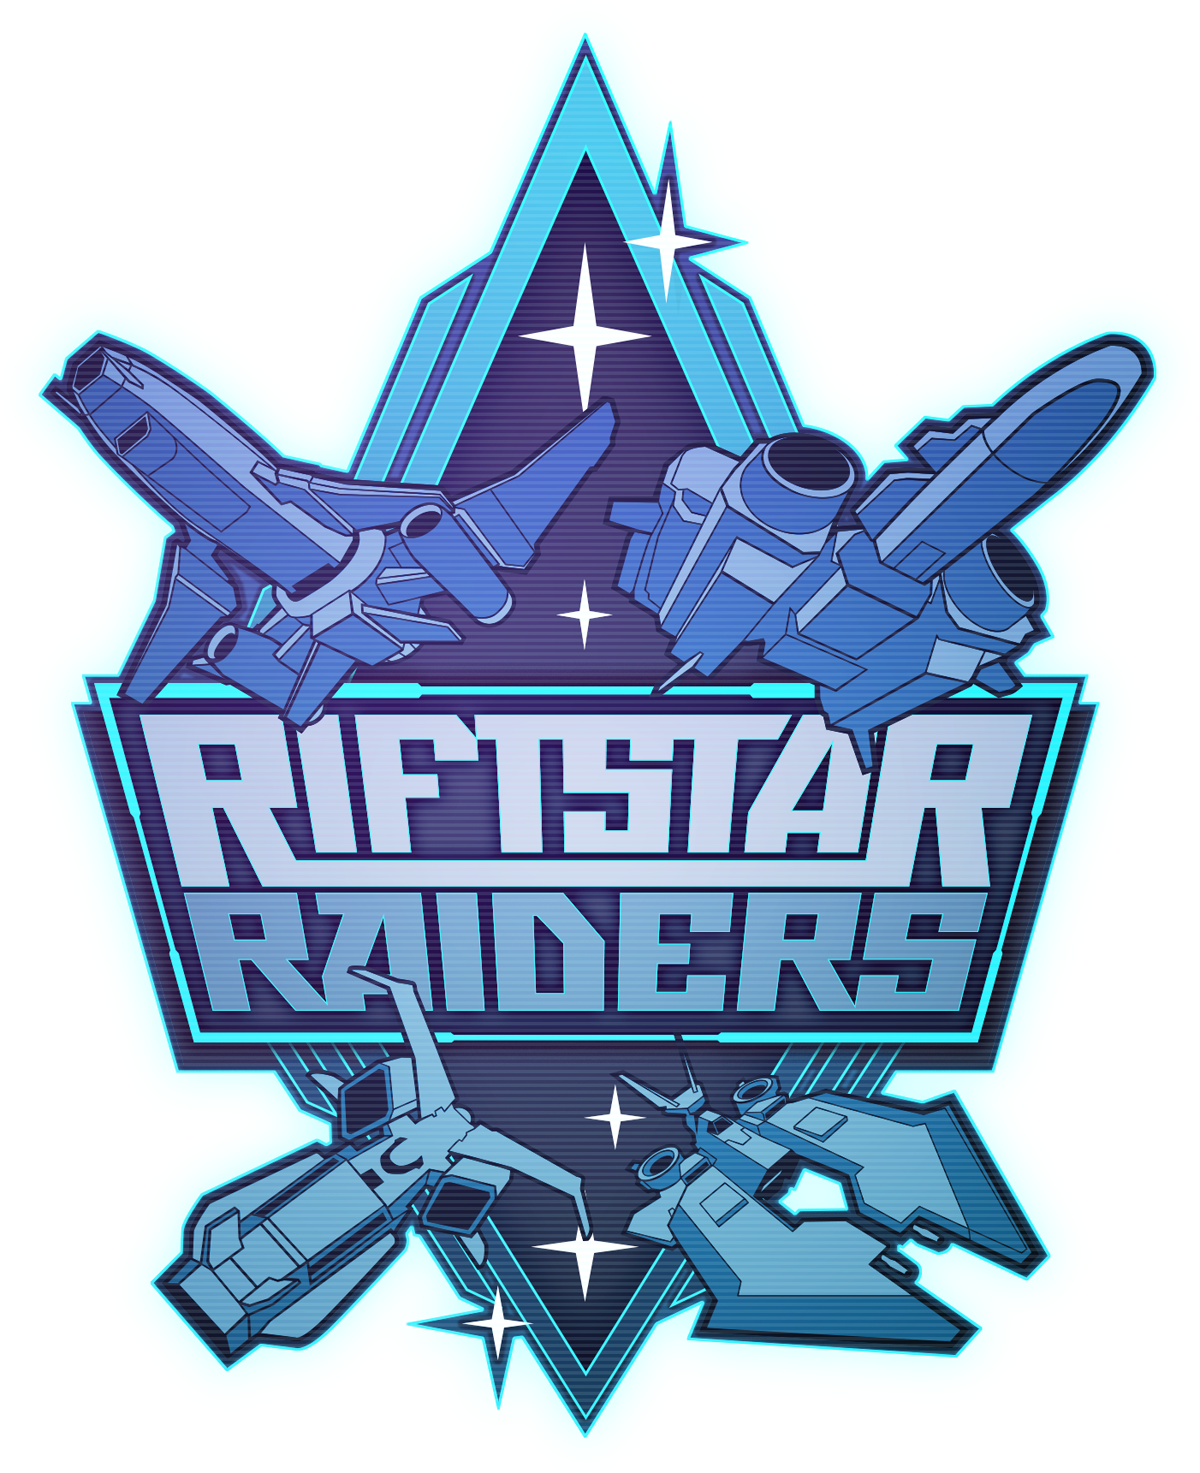 Image of RiftStar Raiders